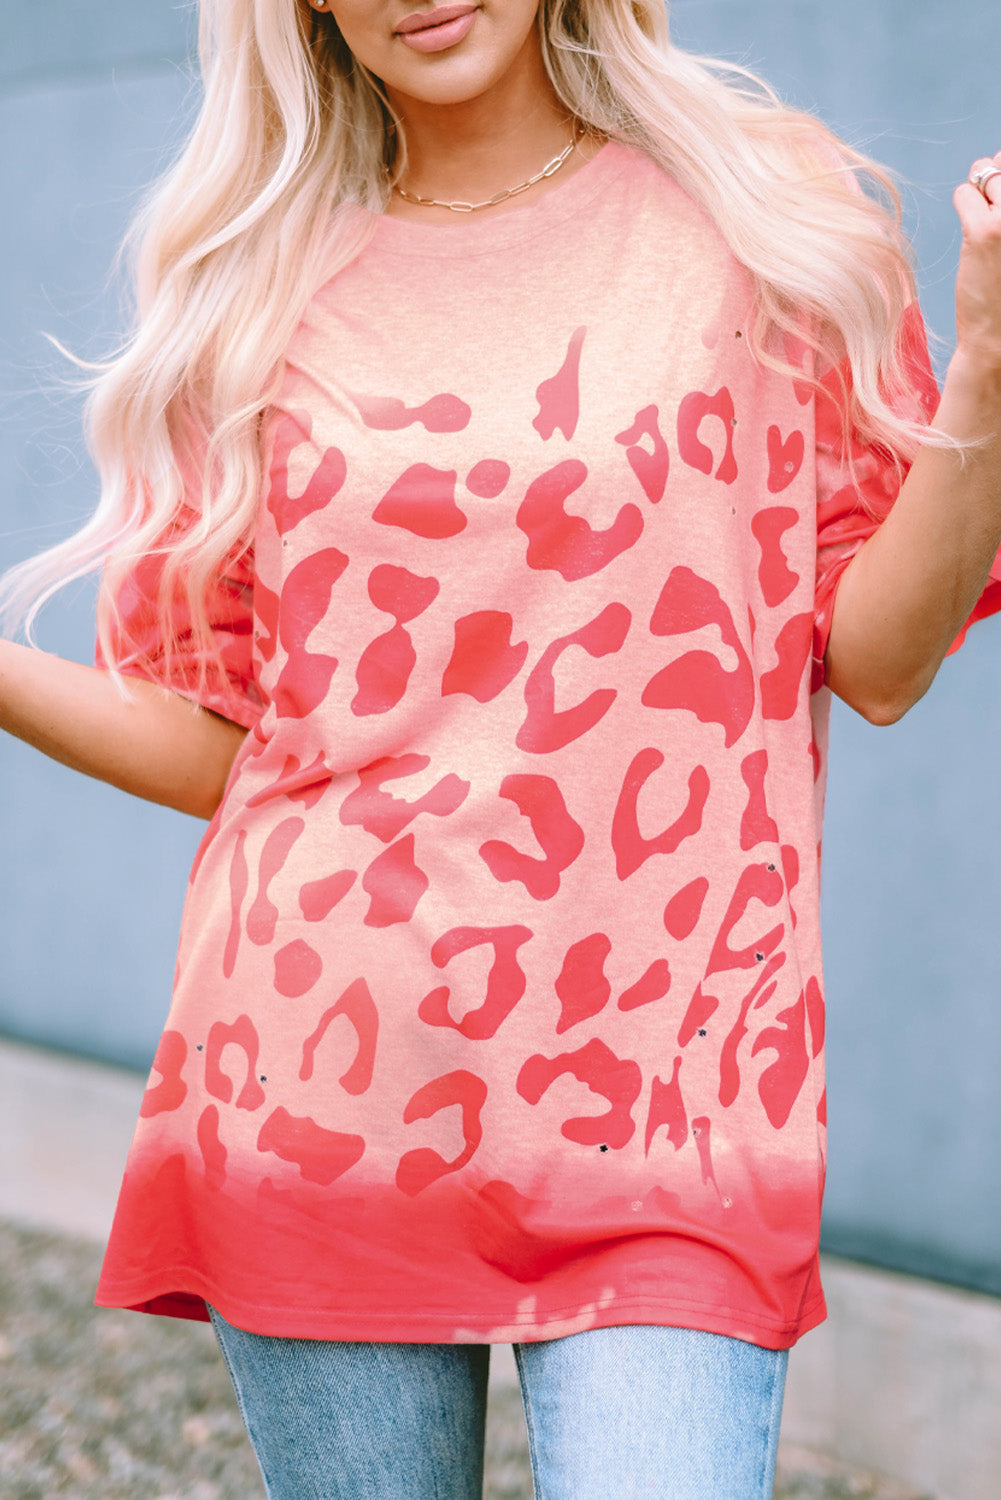 Rosafarbenes, gebleichtes Boyfriend-T-Shirt mit Leopardenmuster und Löchern